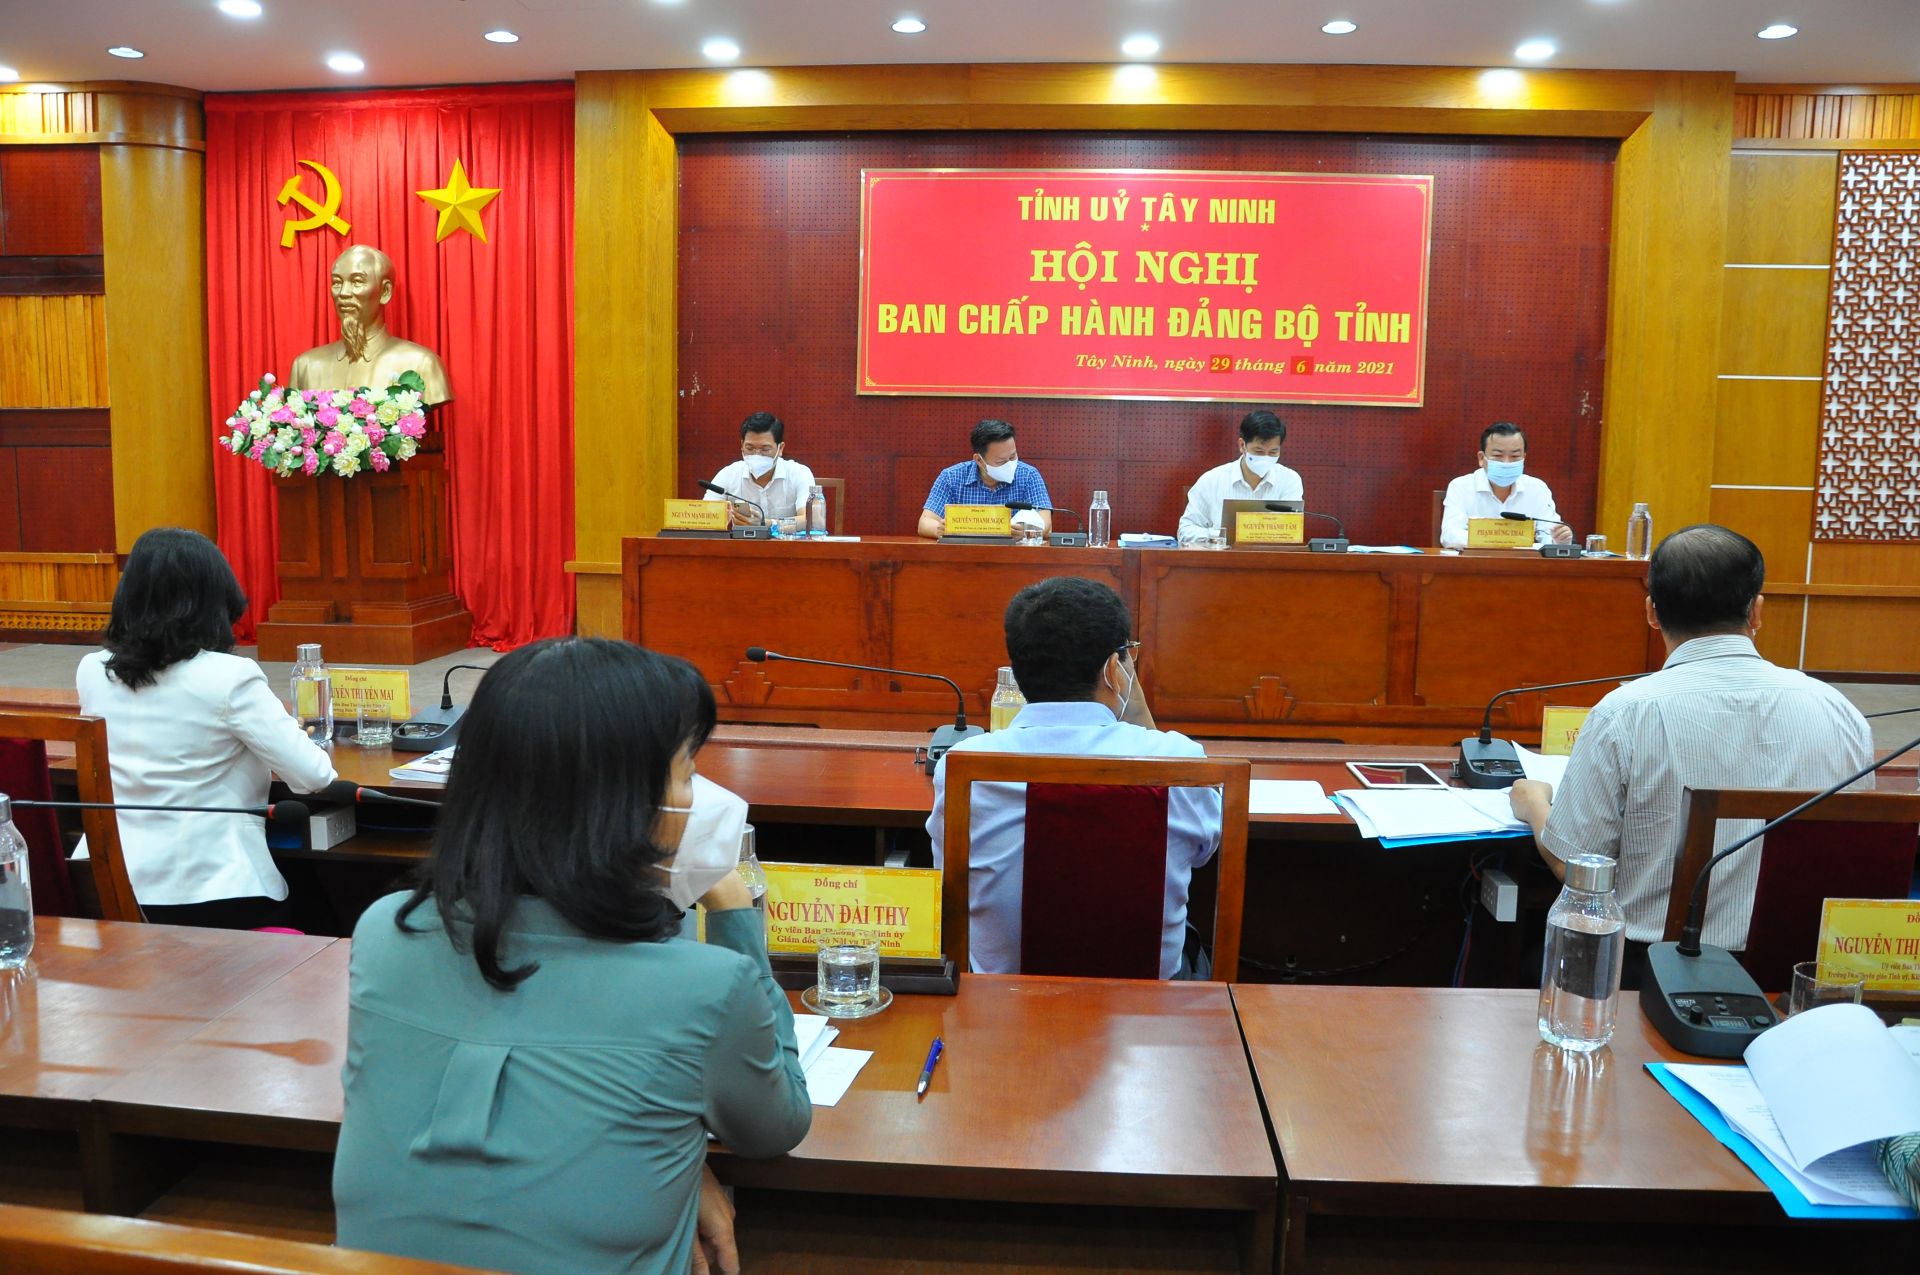 Hội nghị lần thứ 13 (khoá XI) Ban Chấp hành Đảng bộ tỉnh Tây Ninh